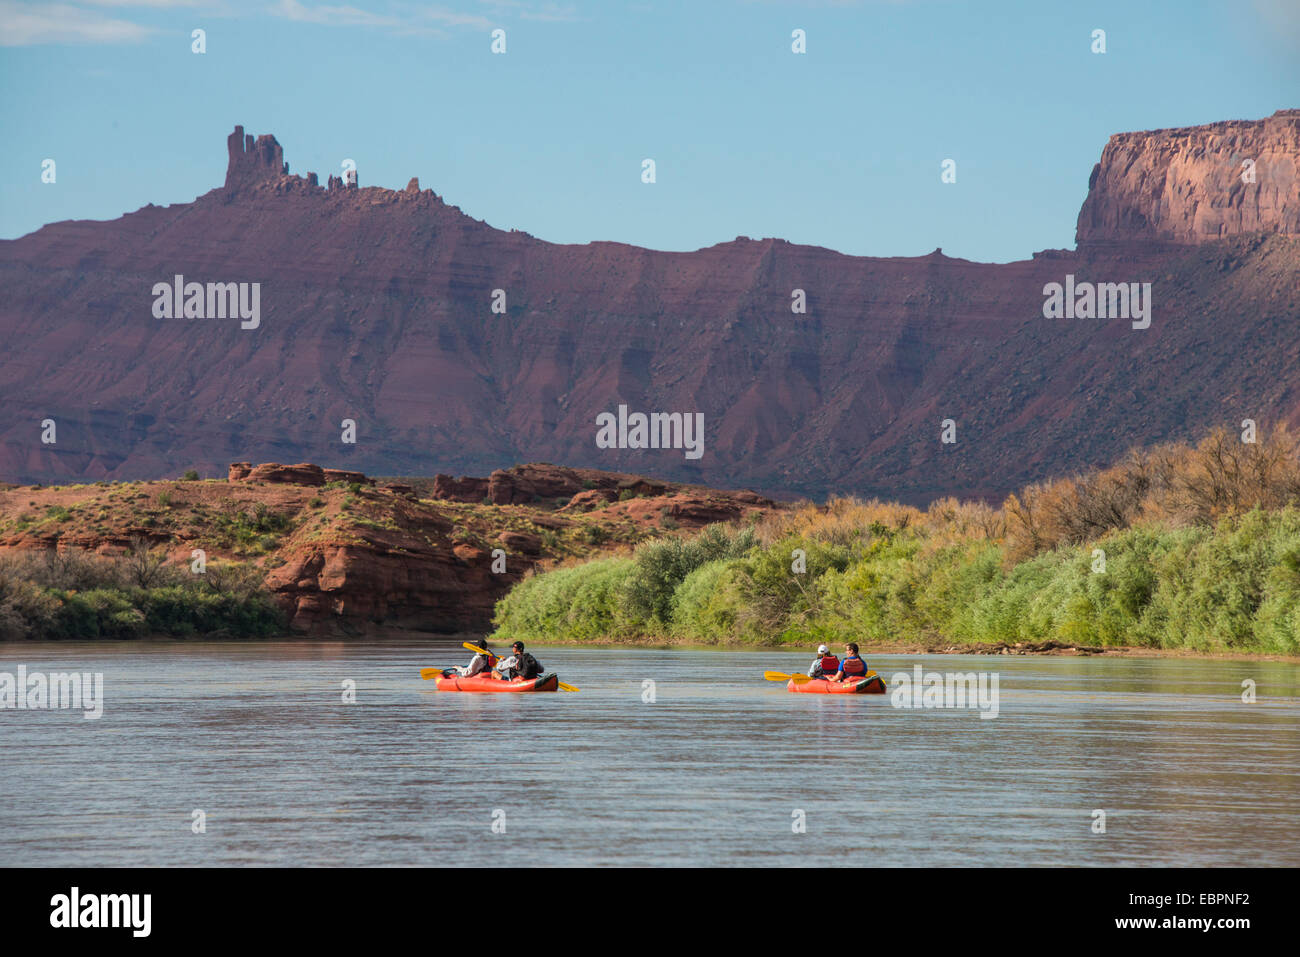 Paare, Kajakfahren auf dem Colorado River, Castle Valley in der Nähe von Moab, Utah, Vereinigte Staaten von Amerika, Nordamerika Stockfoto